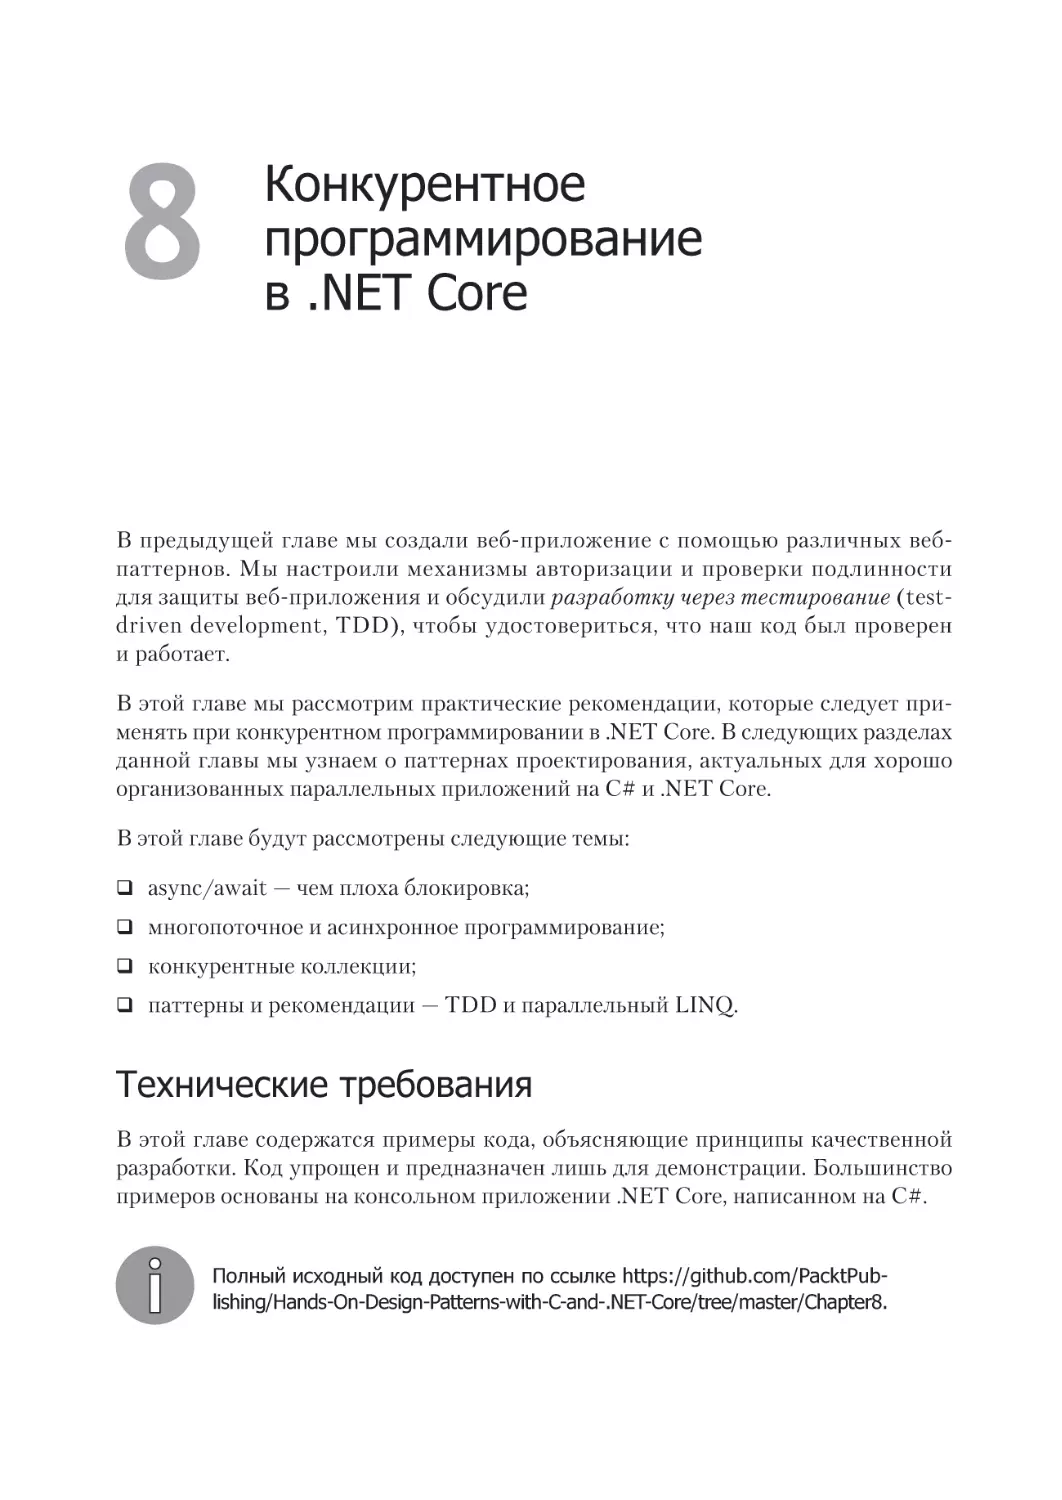 Глава 8
. Конкурентное программирование 
в .NET Core
Технические требования